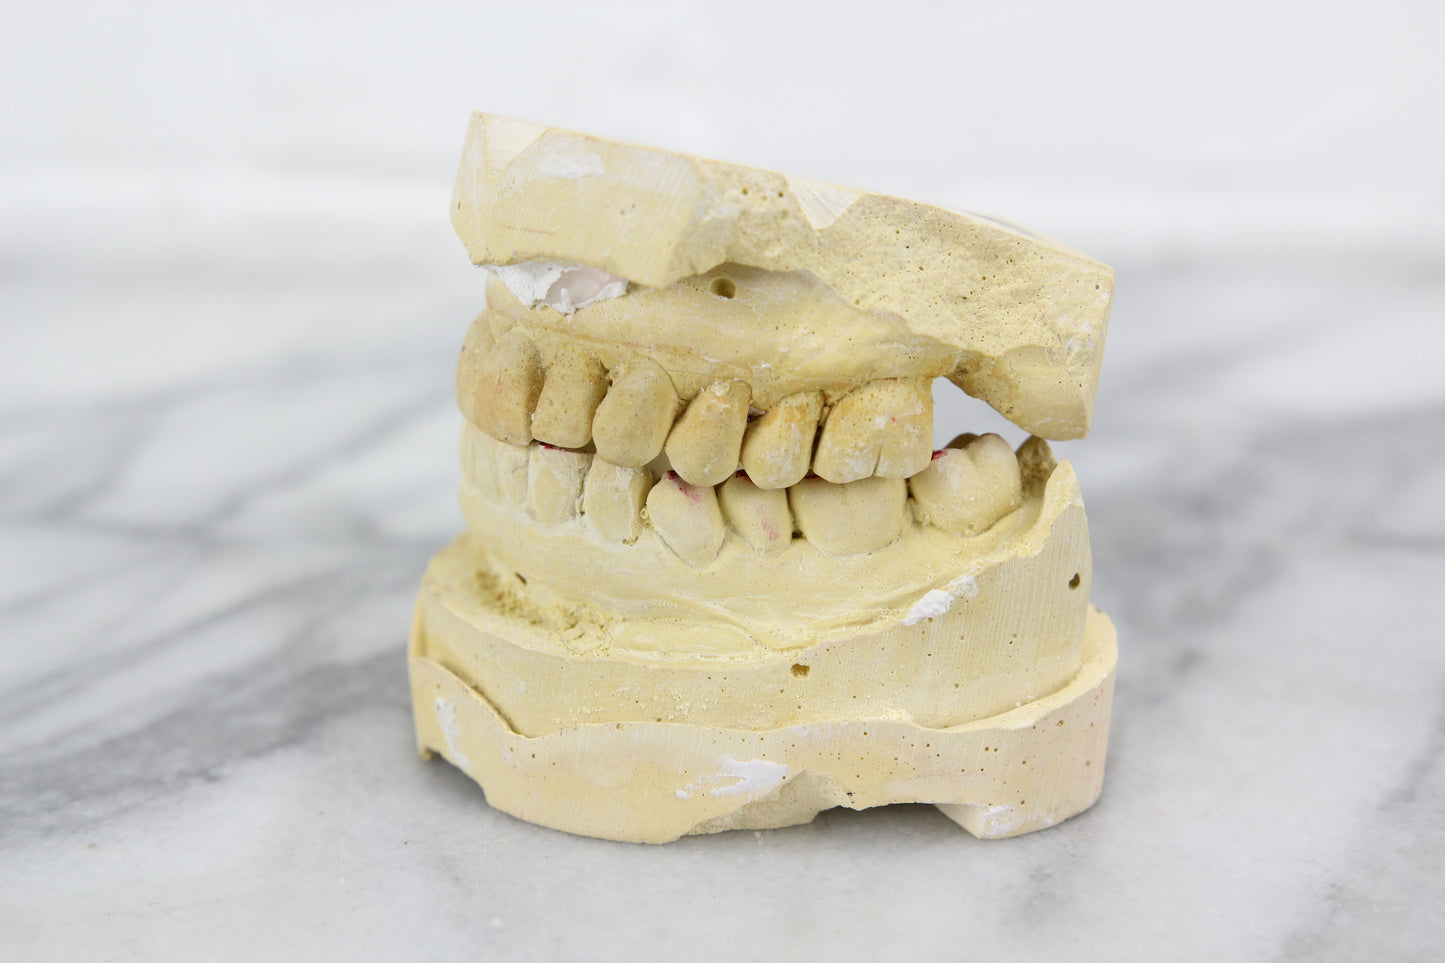 Genuine Dental Mold of My Friend Janet's Teeth